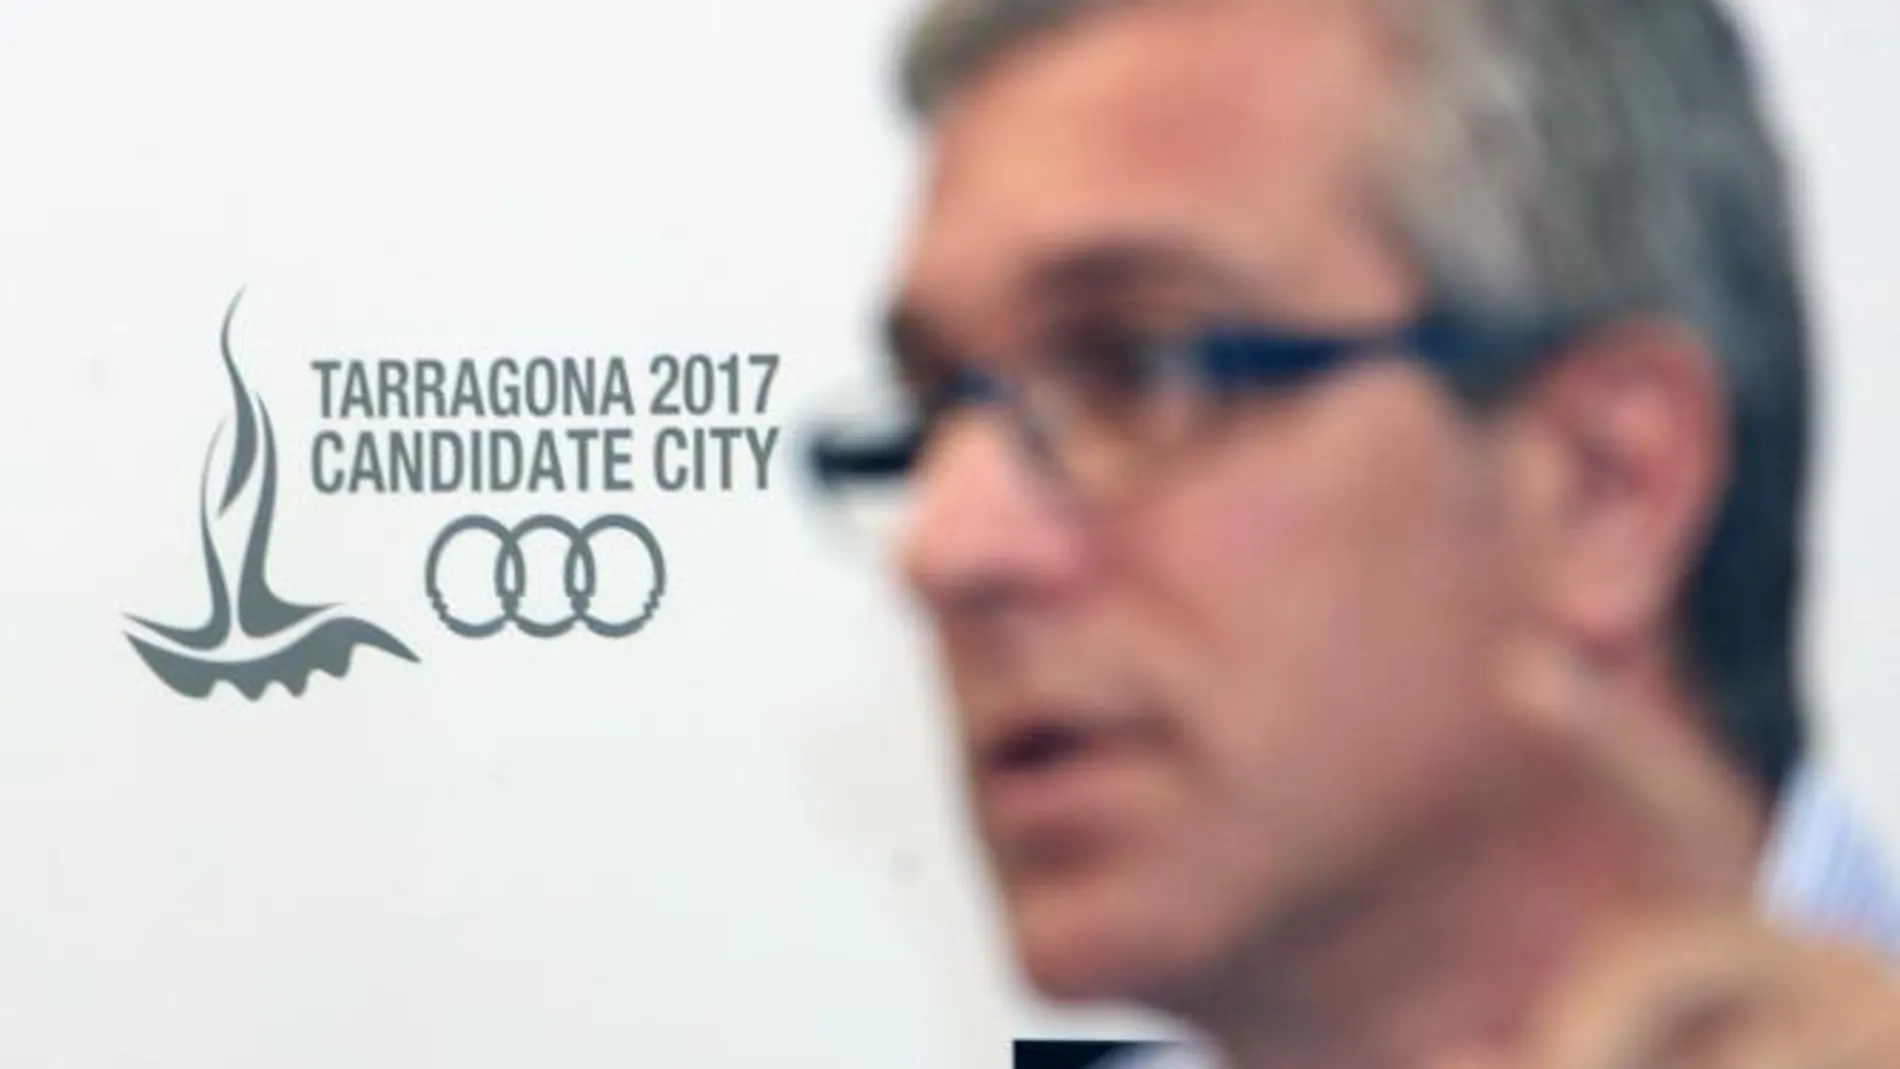 El alcalde de Tarragona y presidente de la candidatura de Tarragona 2017 a los Juegos del Mediterráneo, Josep Fèlix Ballesteros